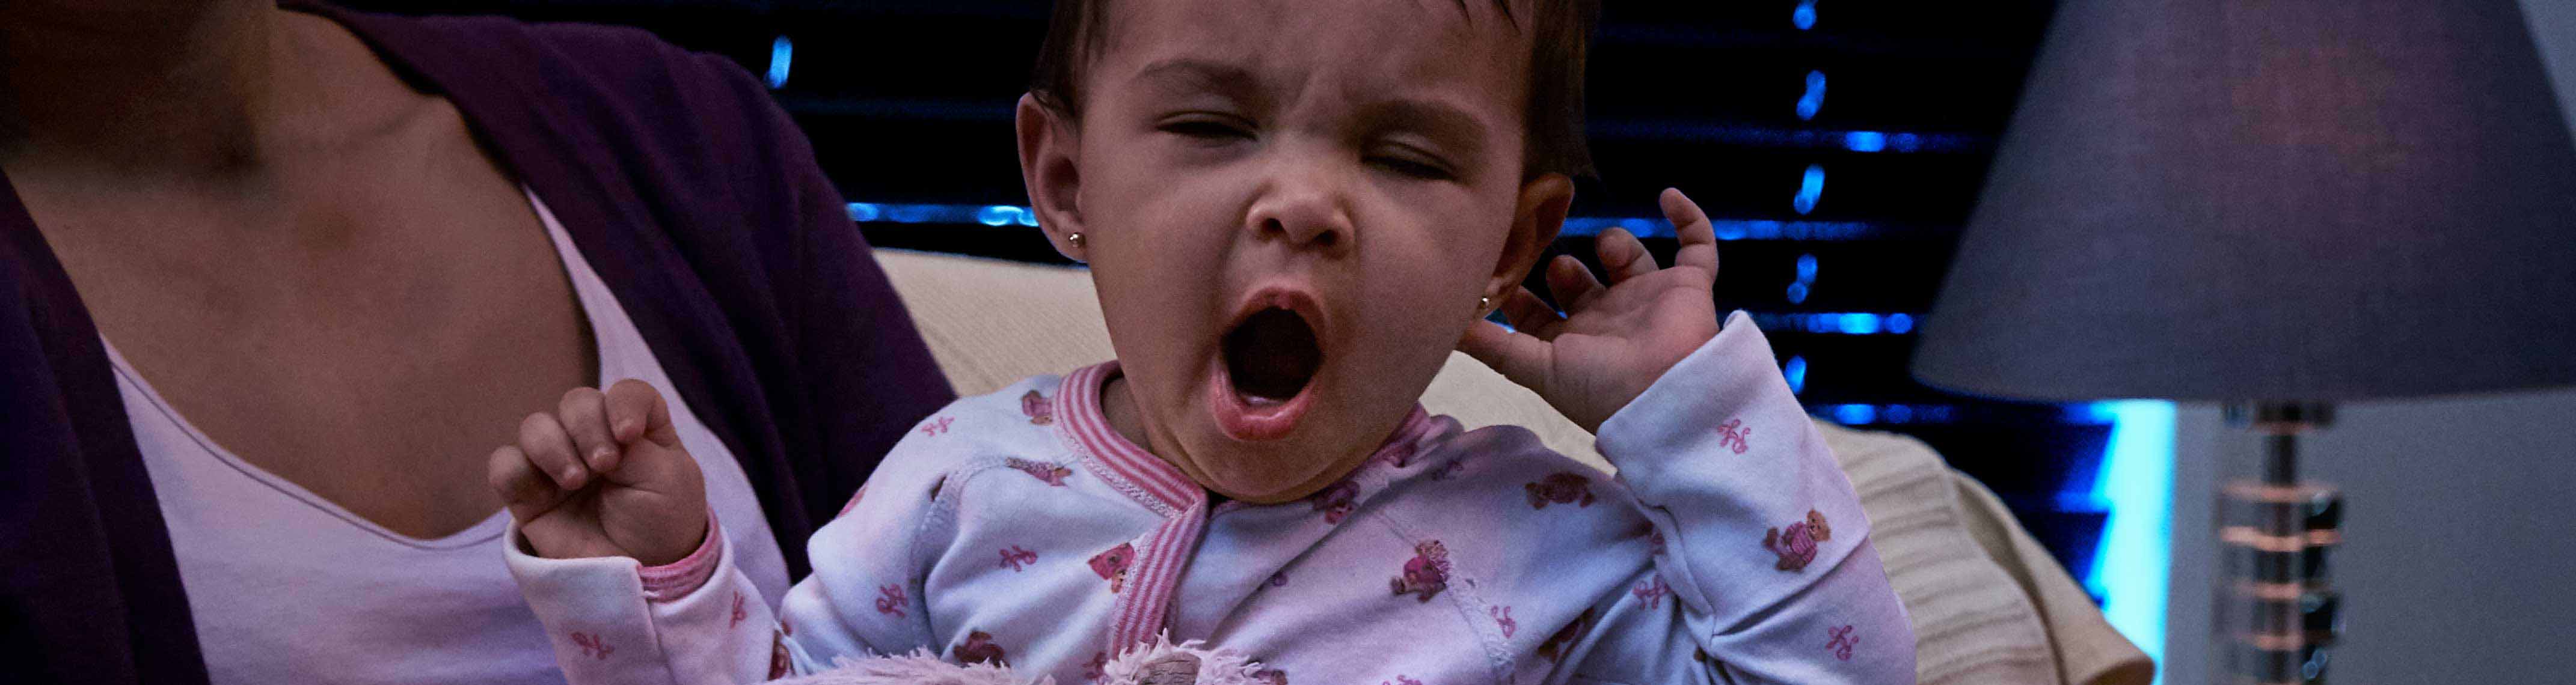 toddle yawning image